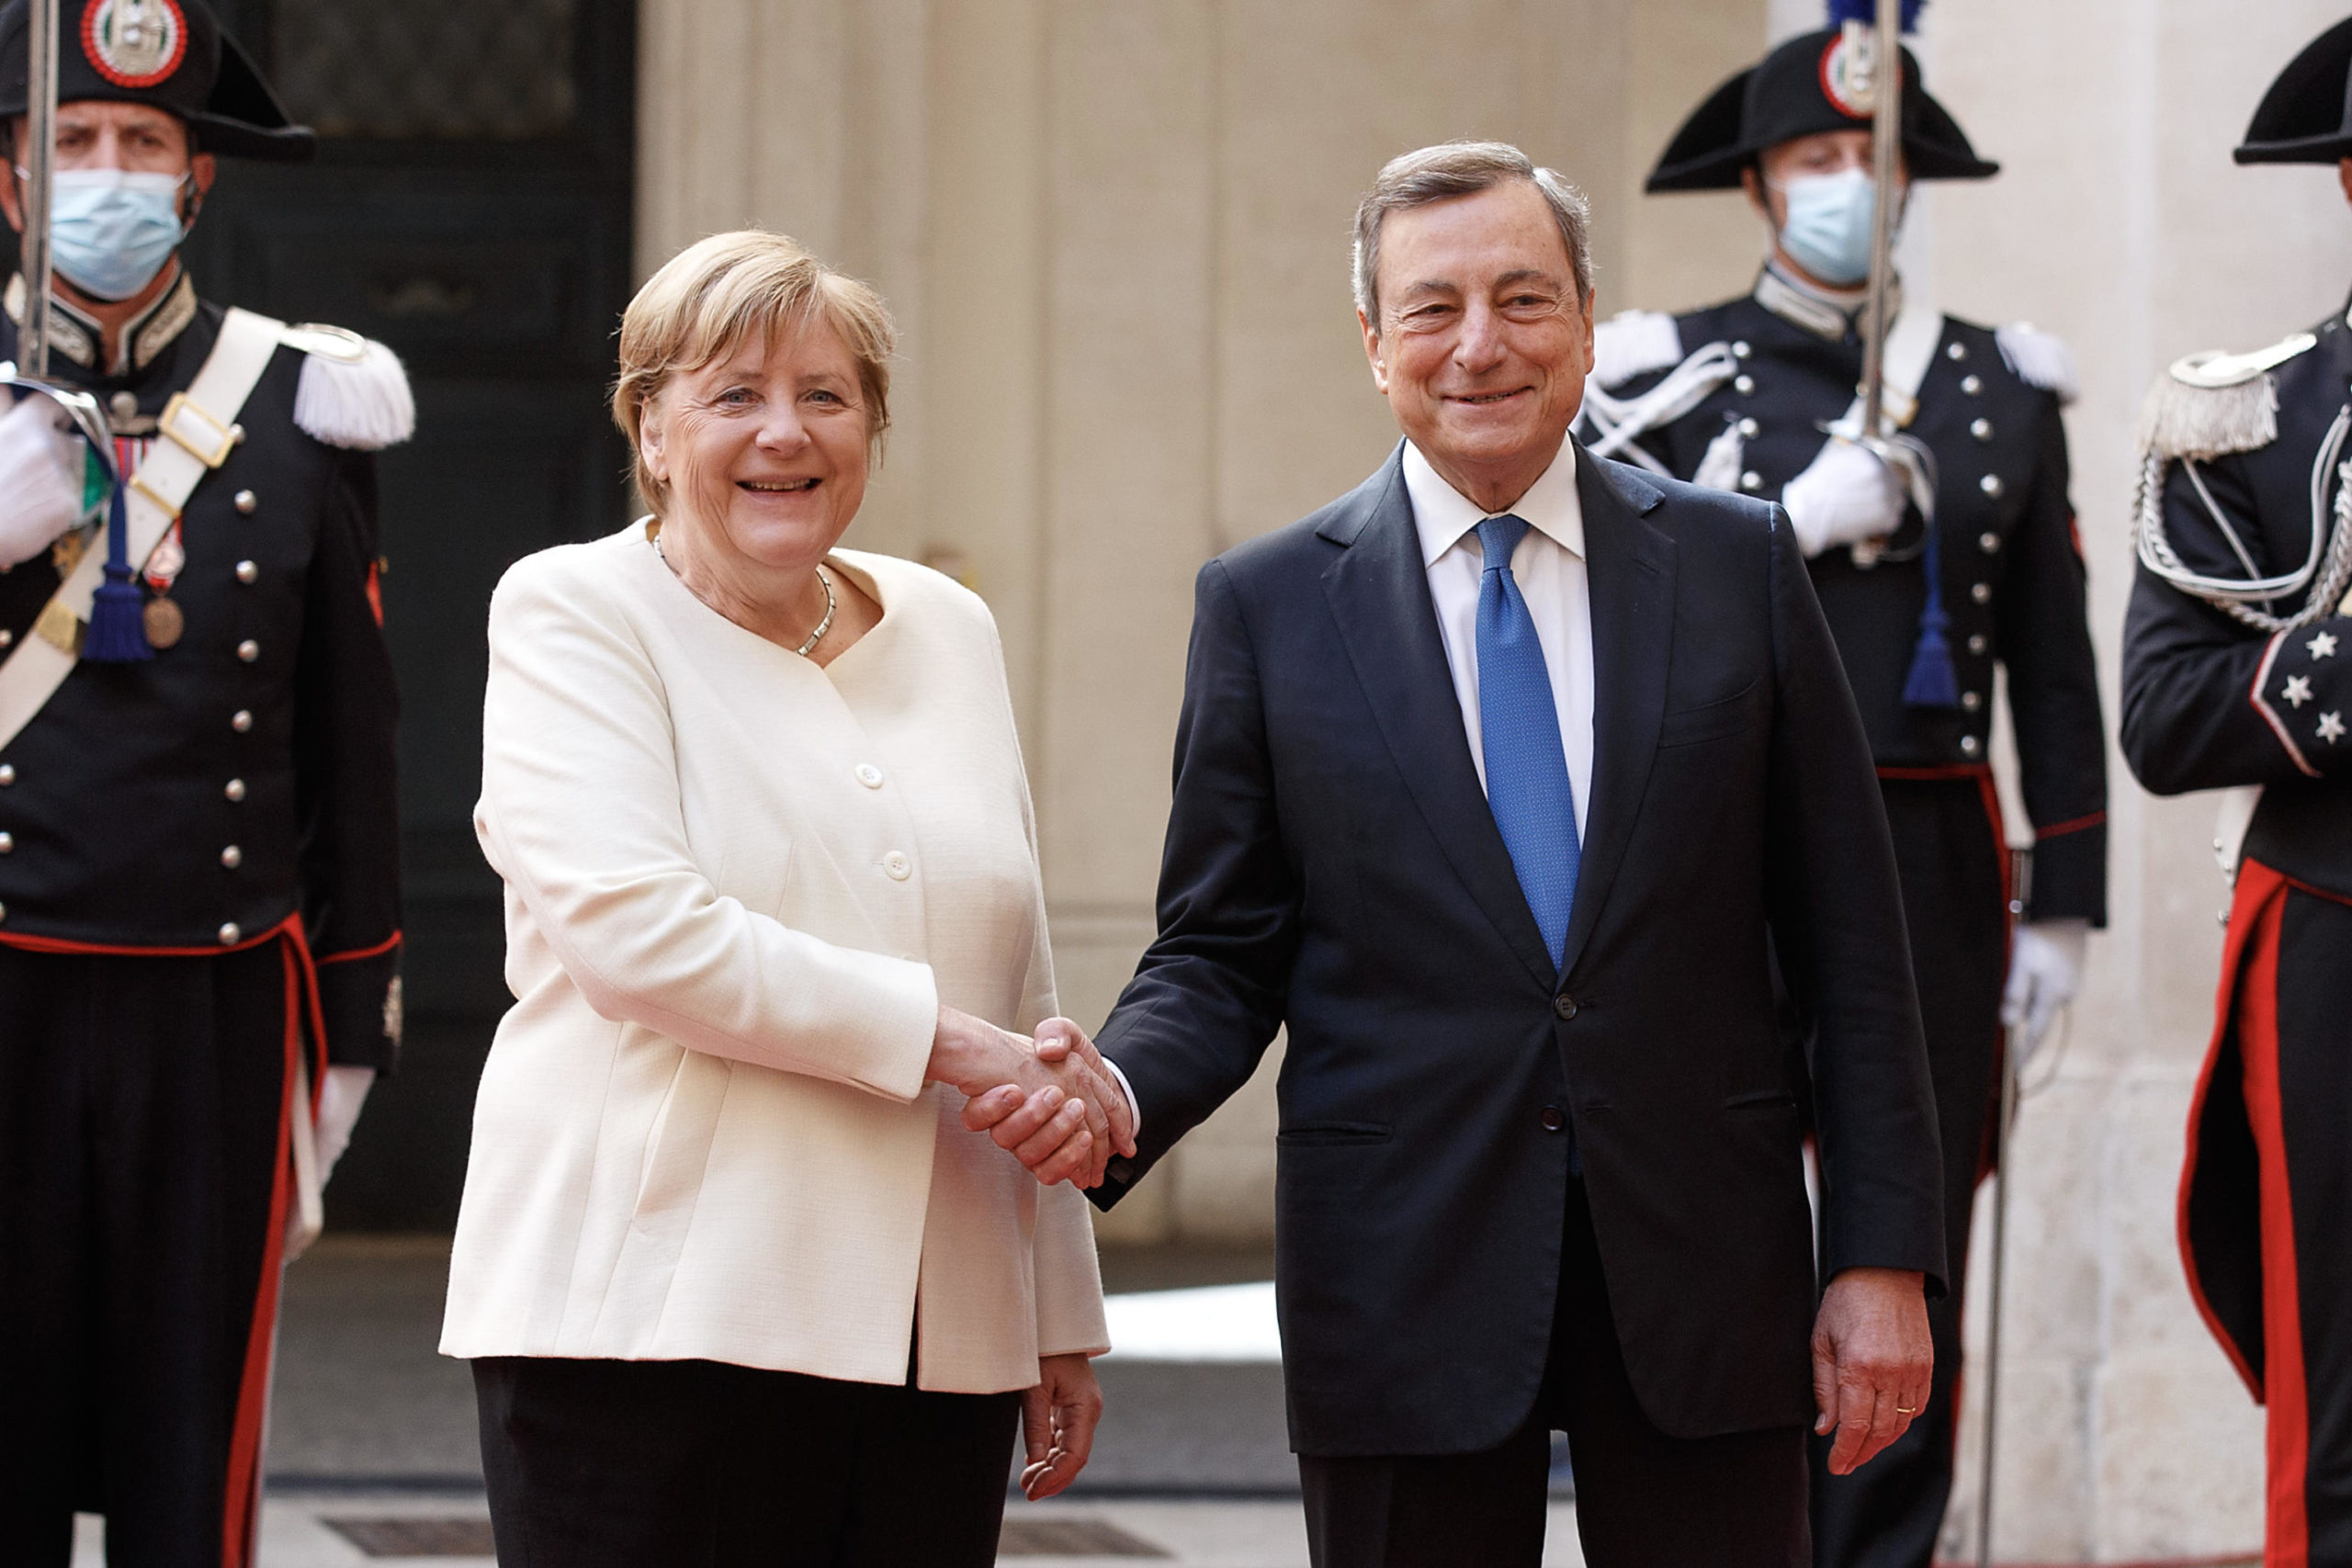 Il saluto tra il premier italiano Mario Draghi e la cancelliera uscente Angela Merkel